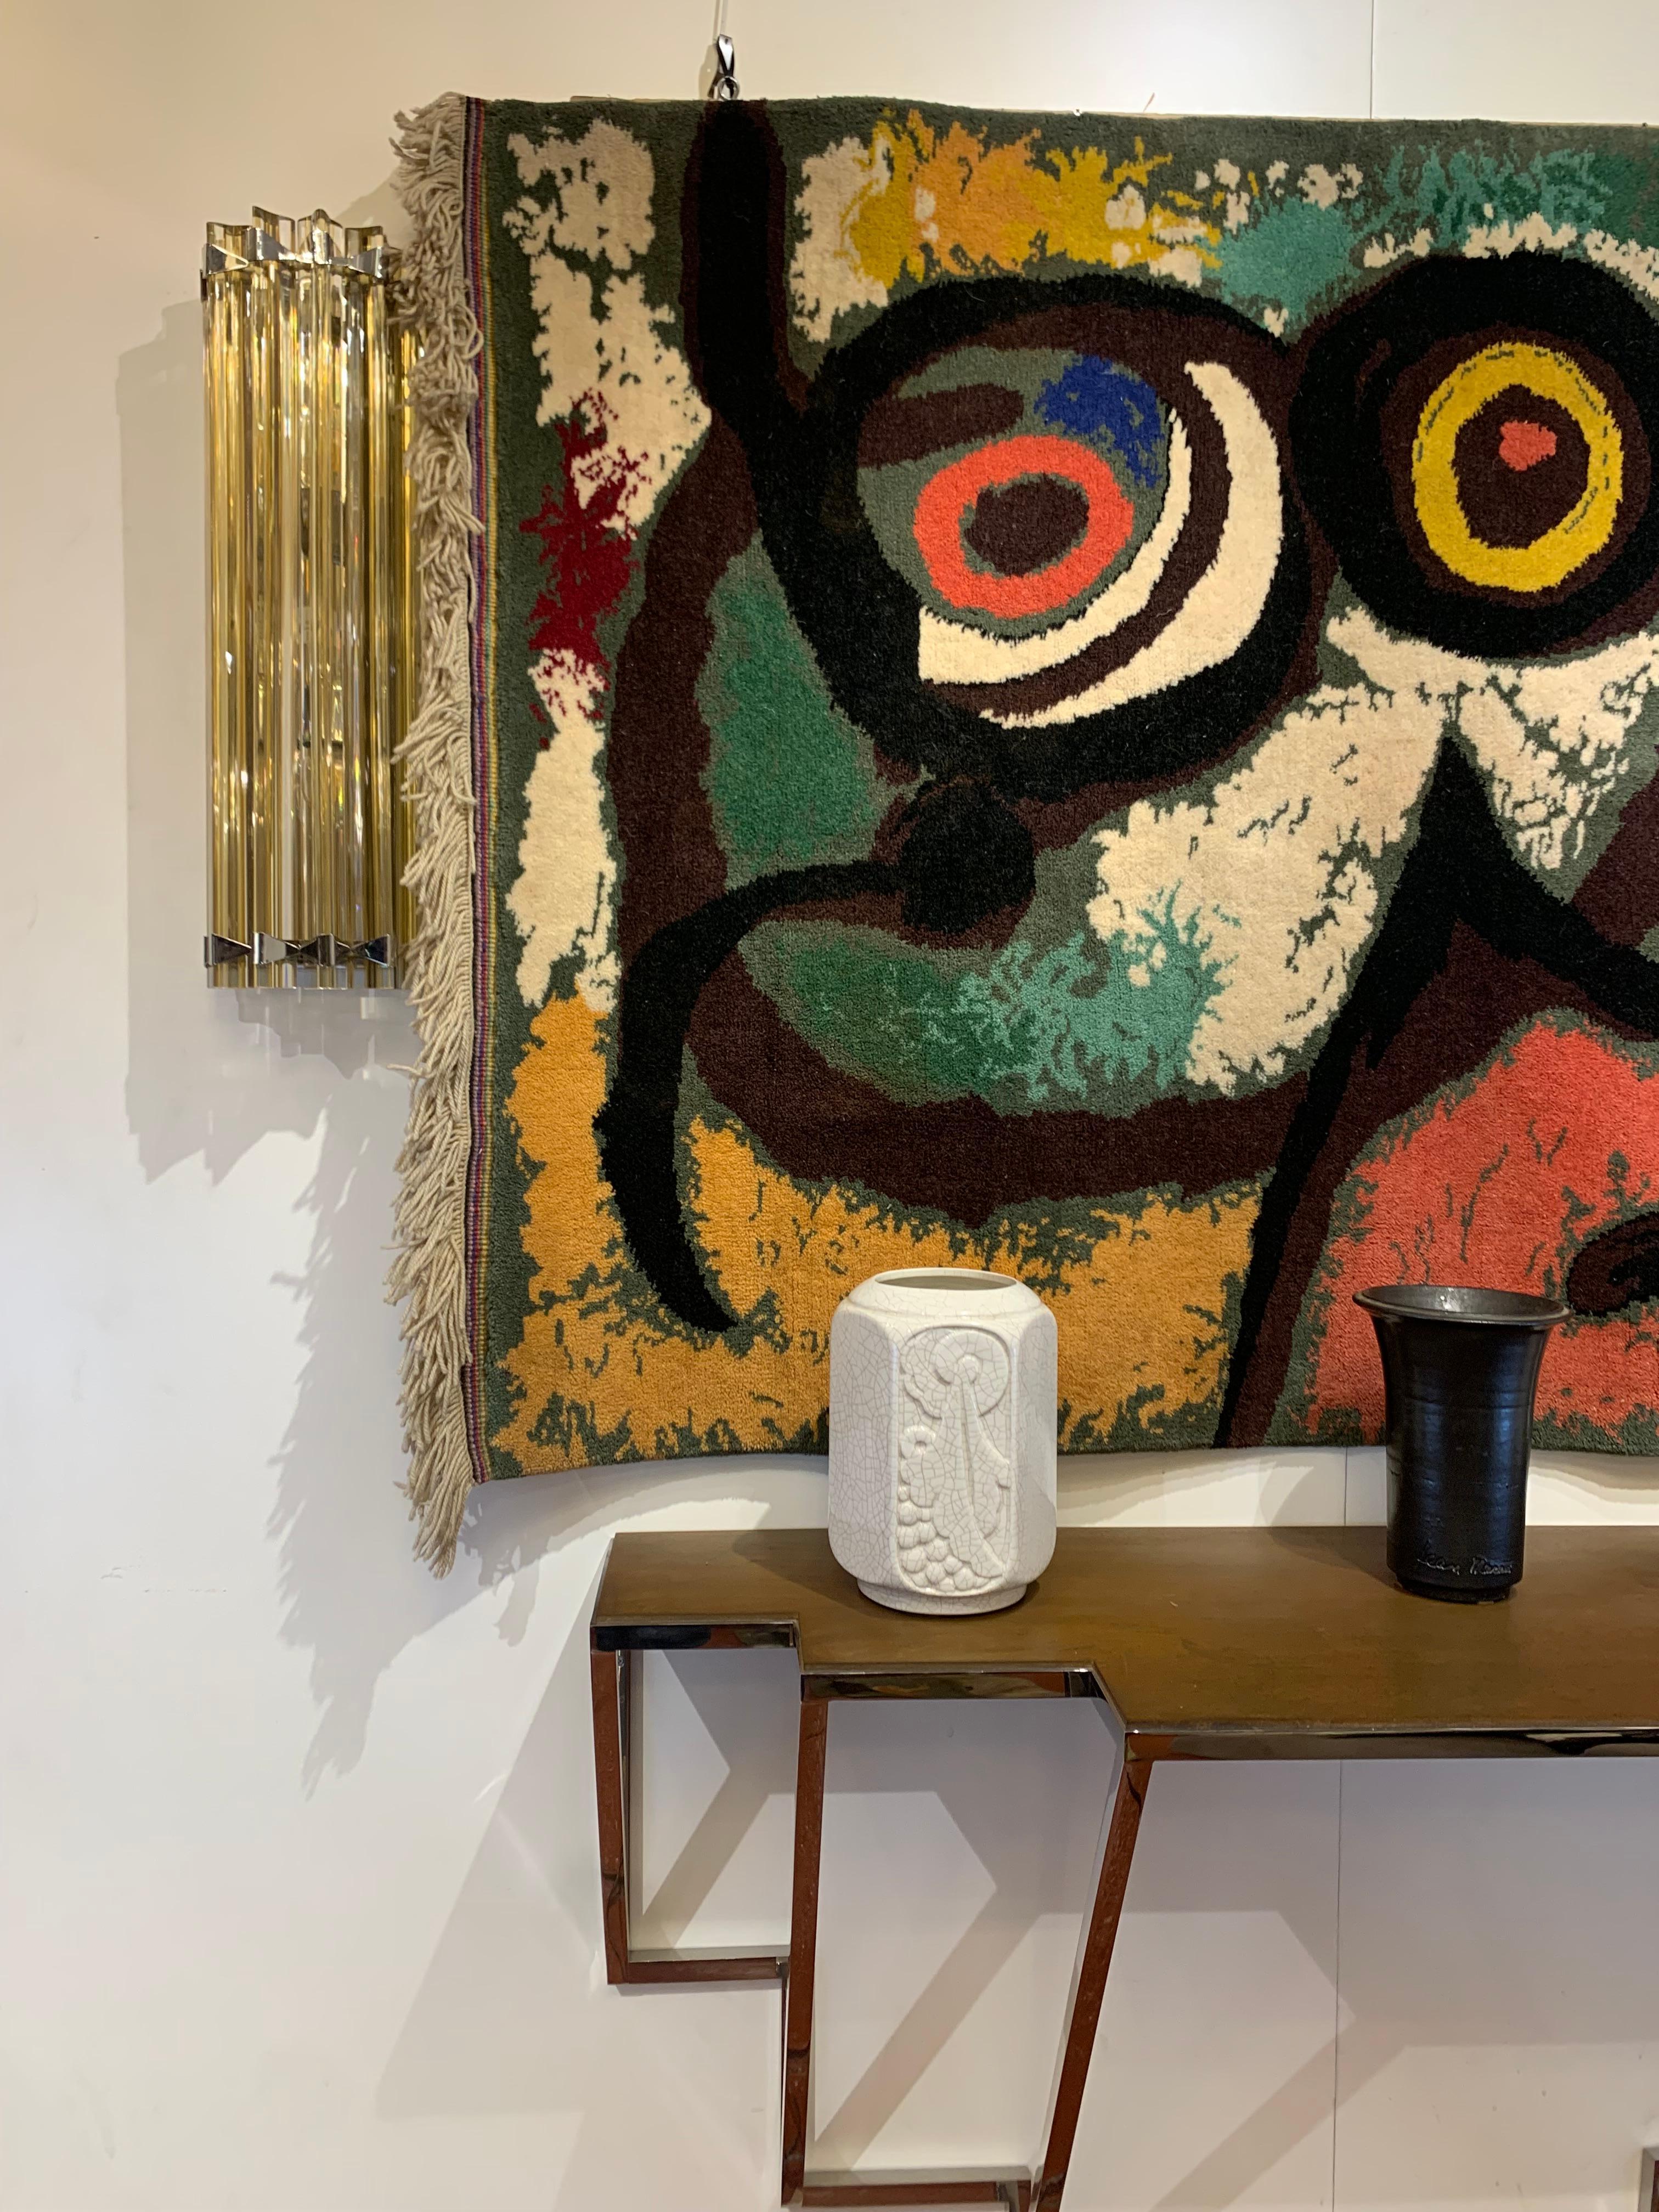 Schöner markierter Wandteppich des spanischen Künstlers/Malers Joan Miro nach seinem Gemälde Femme et Oiseaux (1966).
Eine spielerische, experimentelle Herangehensweise an die Kunst ist charakteristisch für Miros Werk.
Joan Miro stand buchstäblich